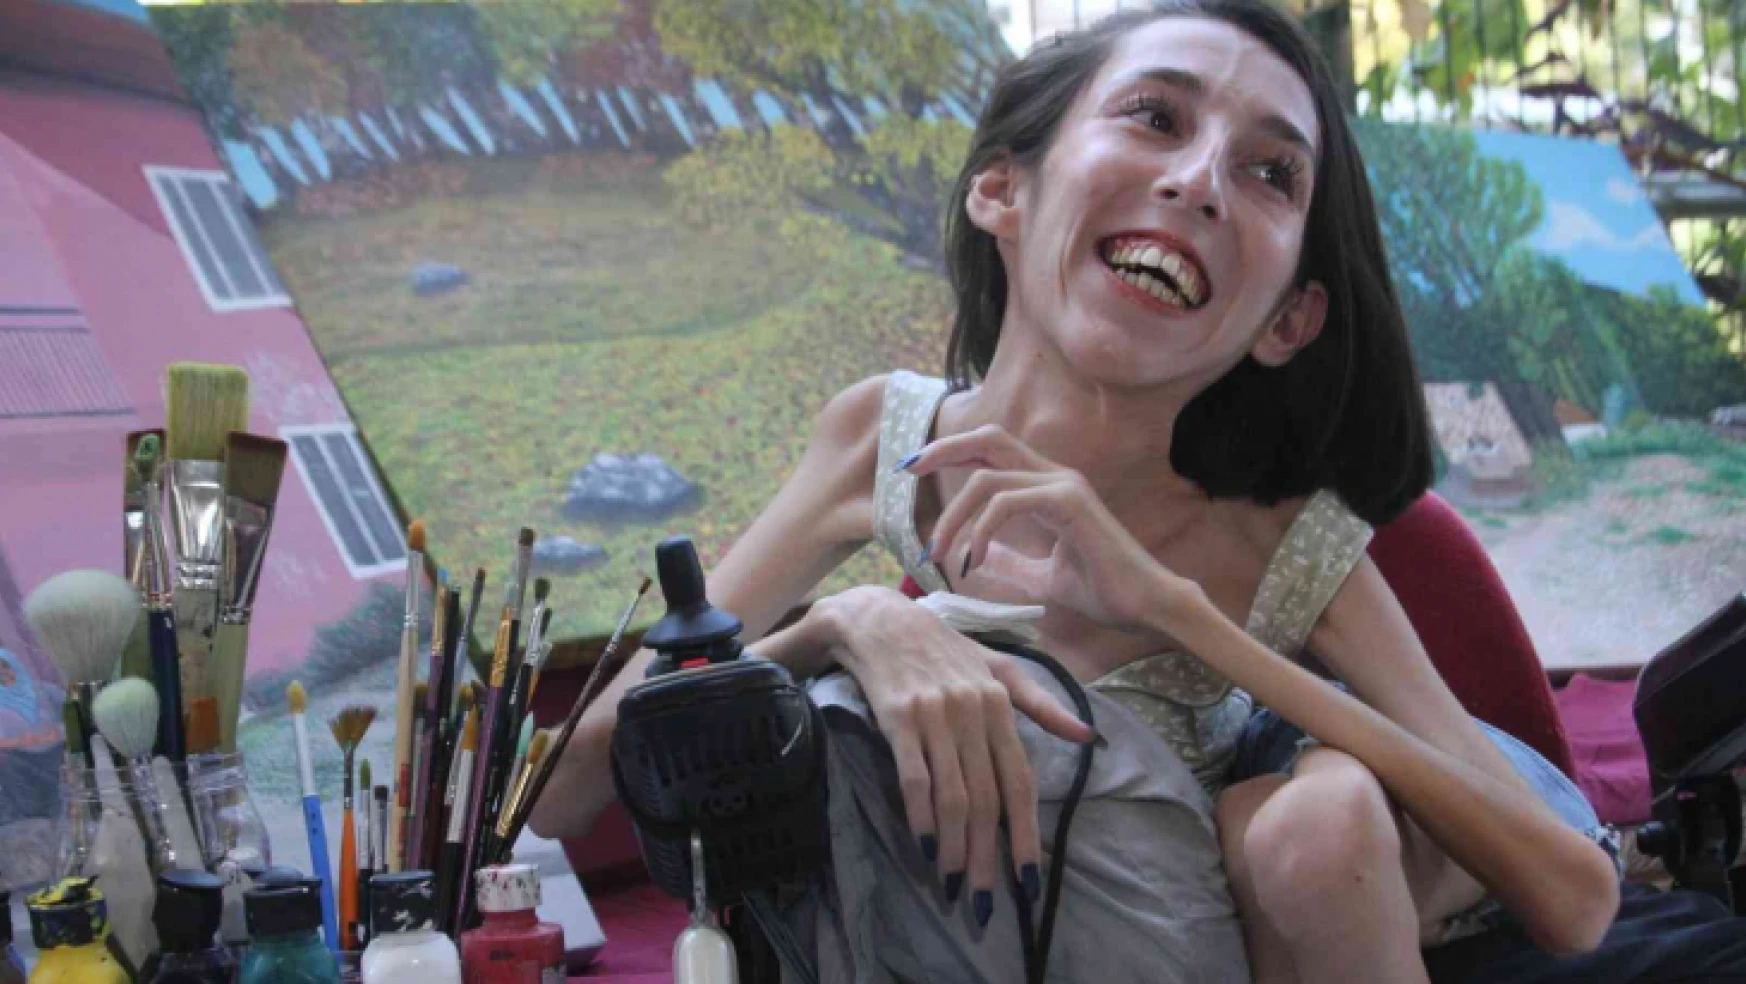 SMA'lı Gülçin'in engelli aracı üzerinde çizdiği resimler belgesele konu oldu